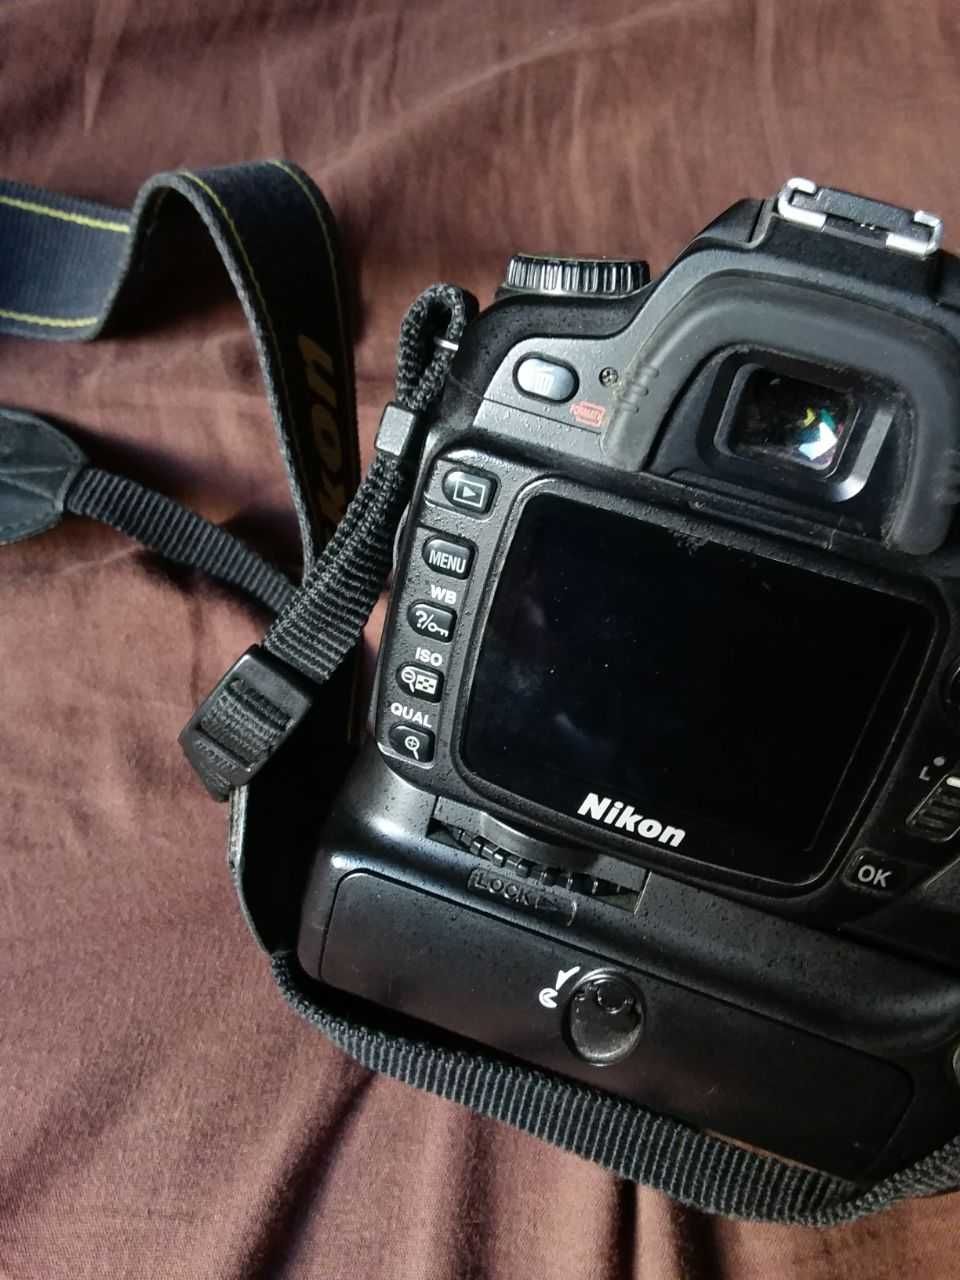 Nikon D80 + Nikkor 18-55mm f/3.5-5.6G AF-S VR DX + допы (обмен)